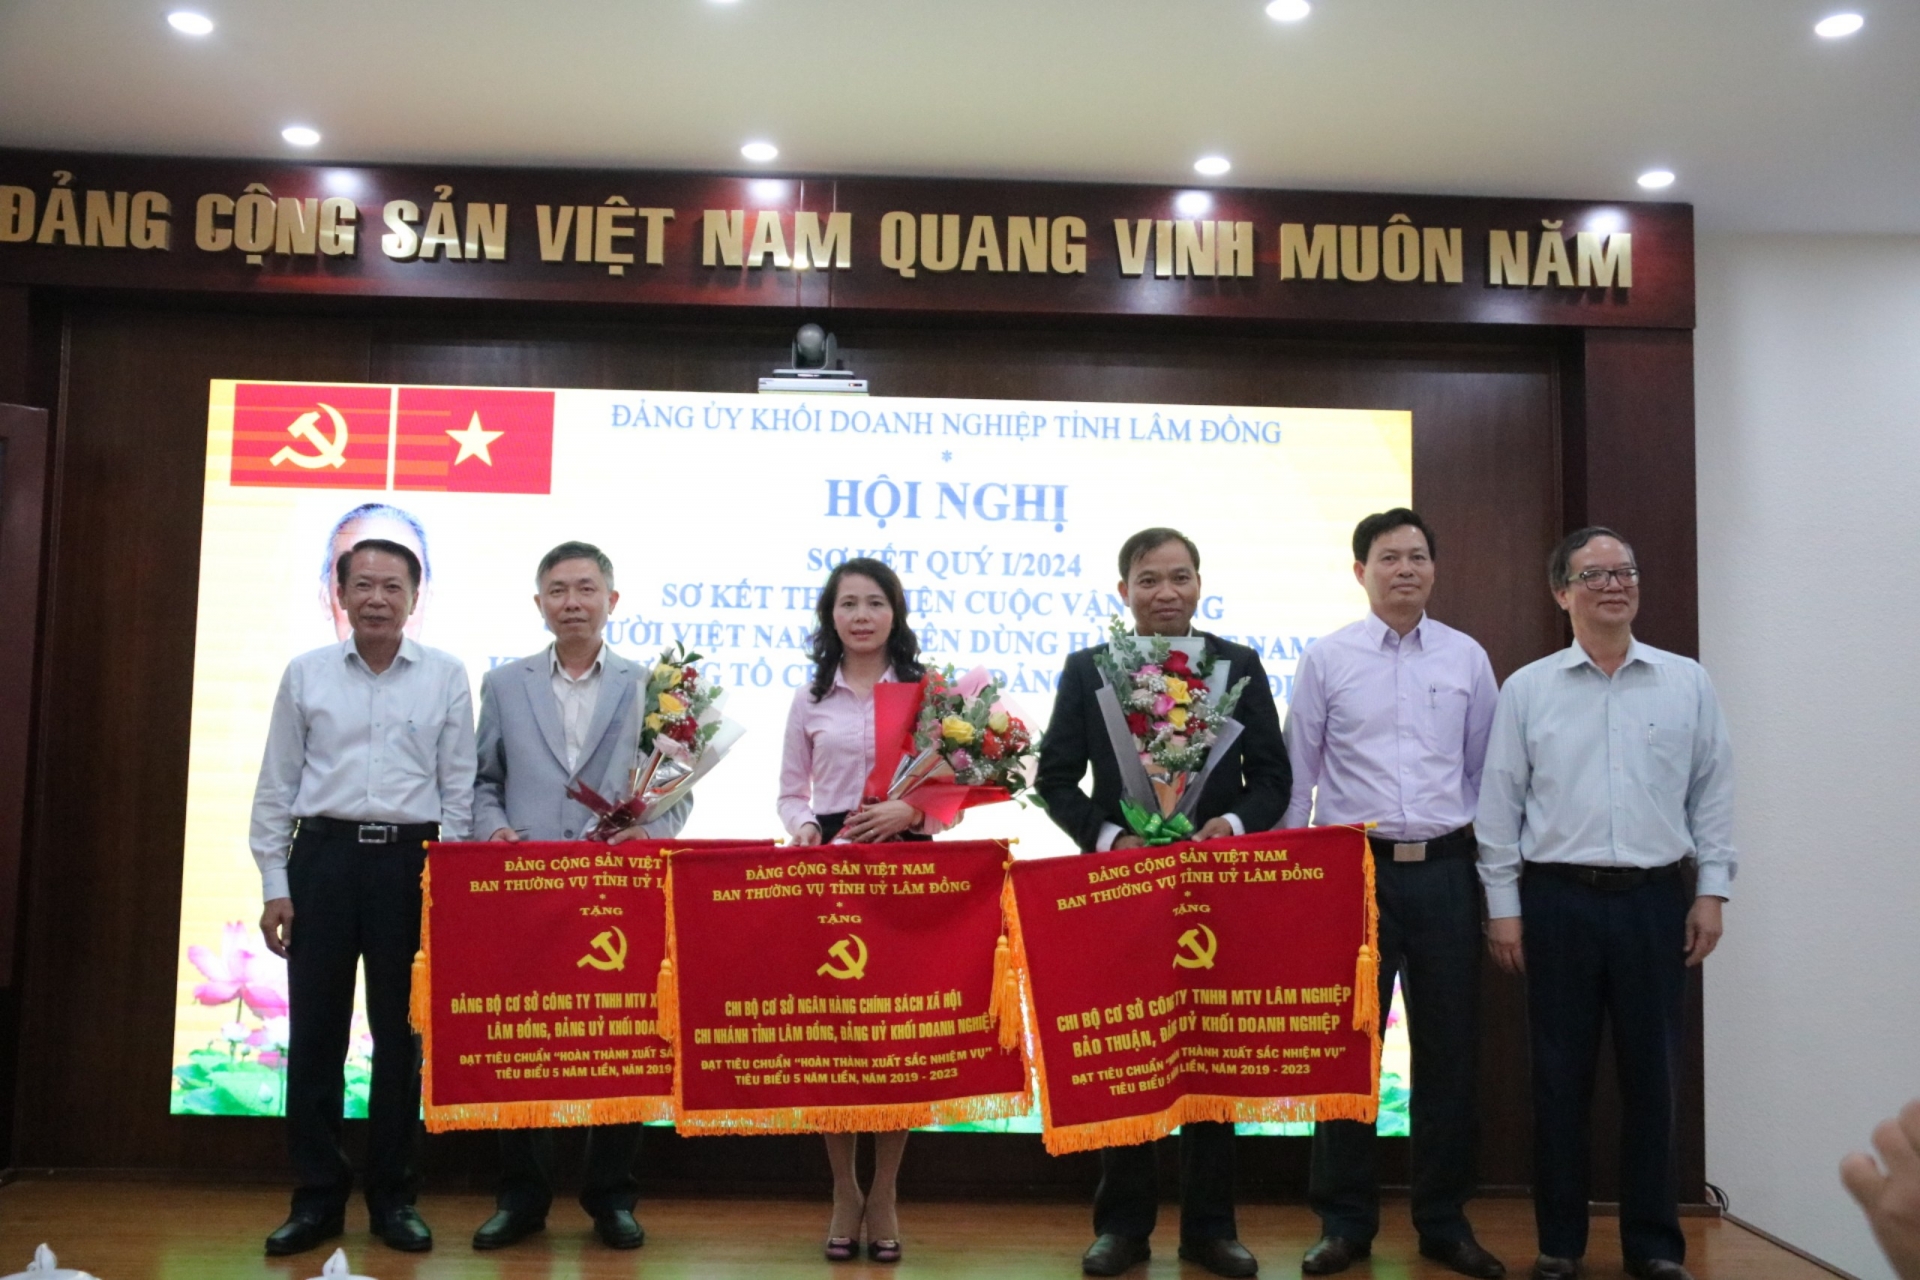 Đảng ủy Khối Doanh nghiệp tỉnh Lâm Đồng sơ kết công tác Quý I